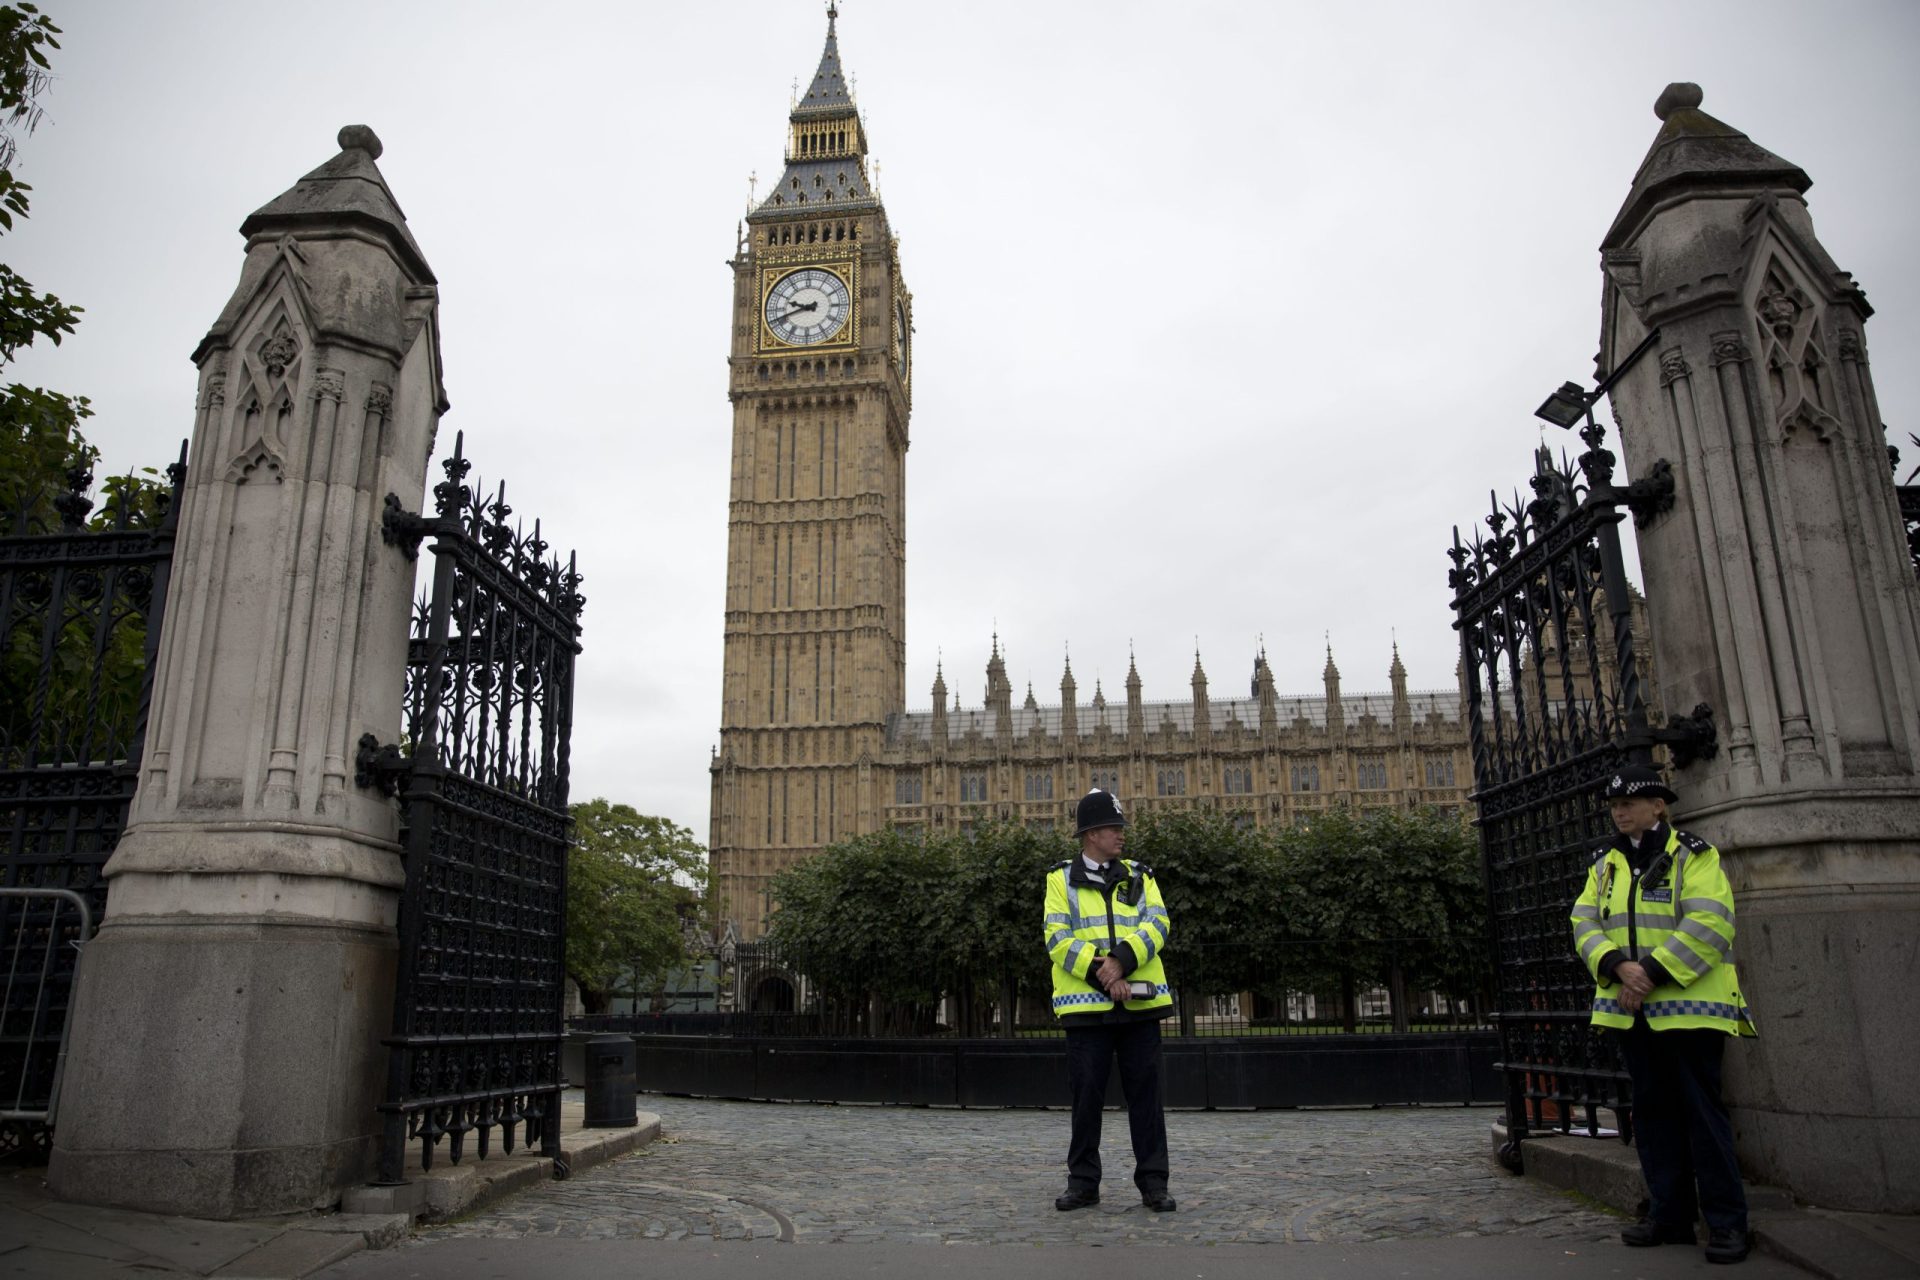 Ameaça &#8216;jihadista&#8217; deixa Reino Unido em alerta